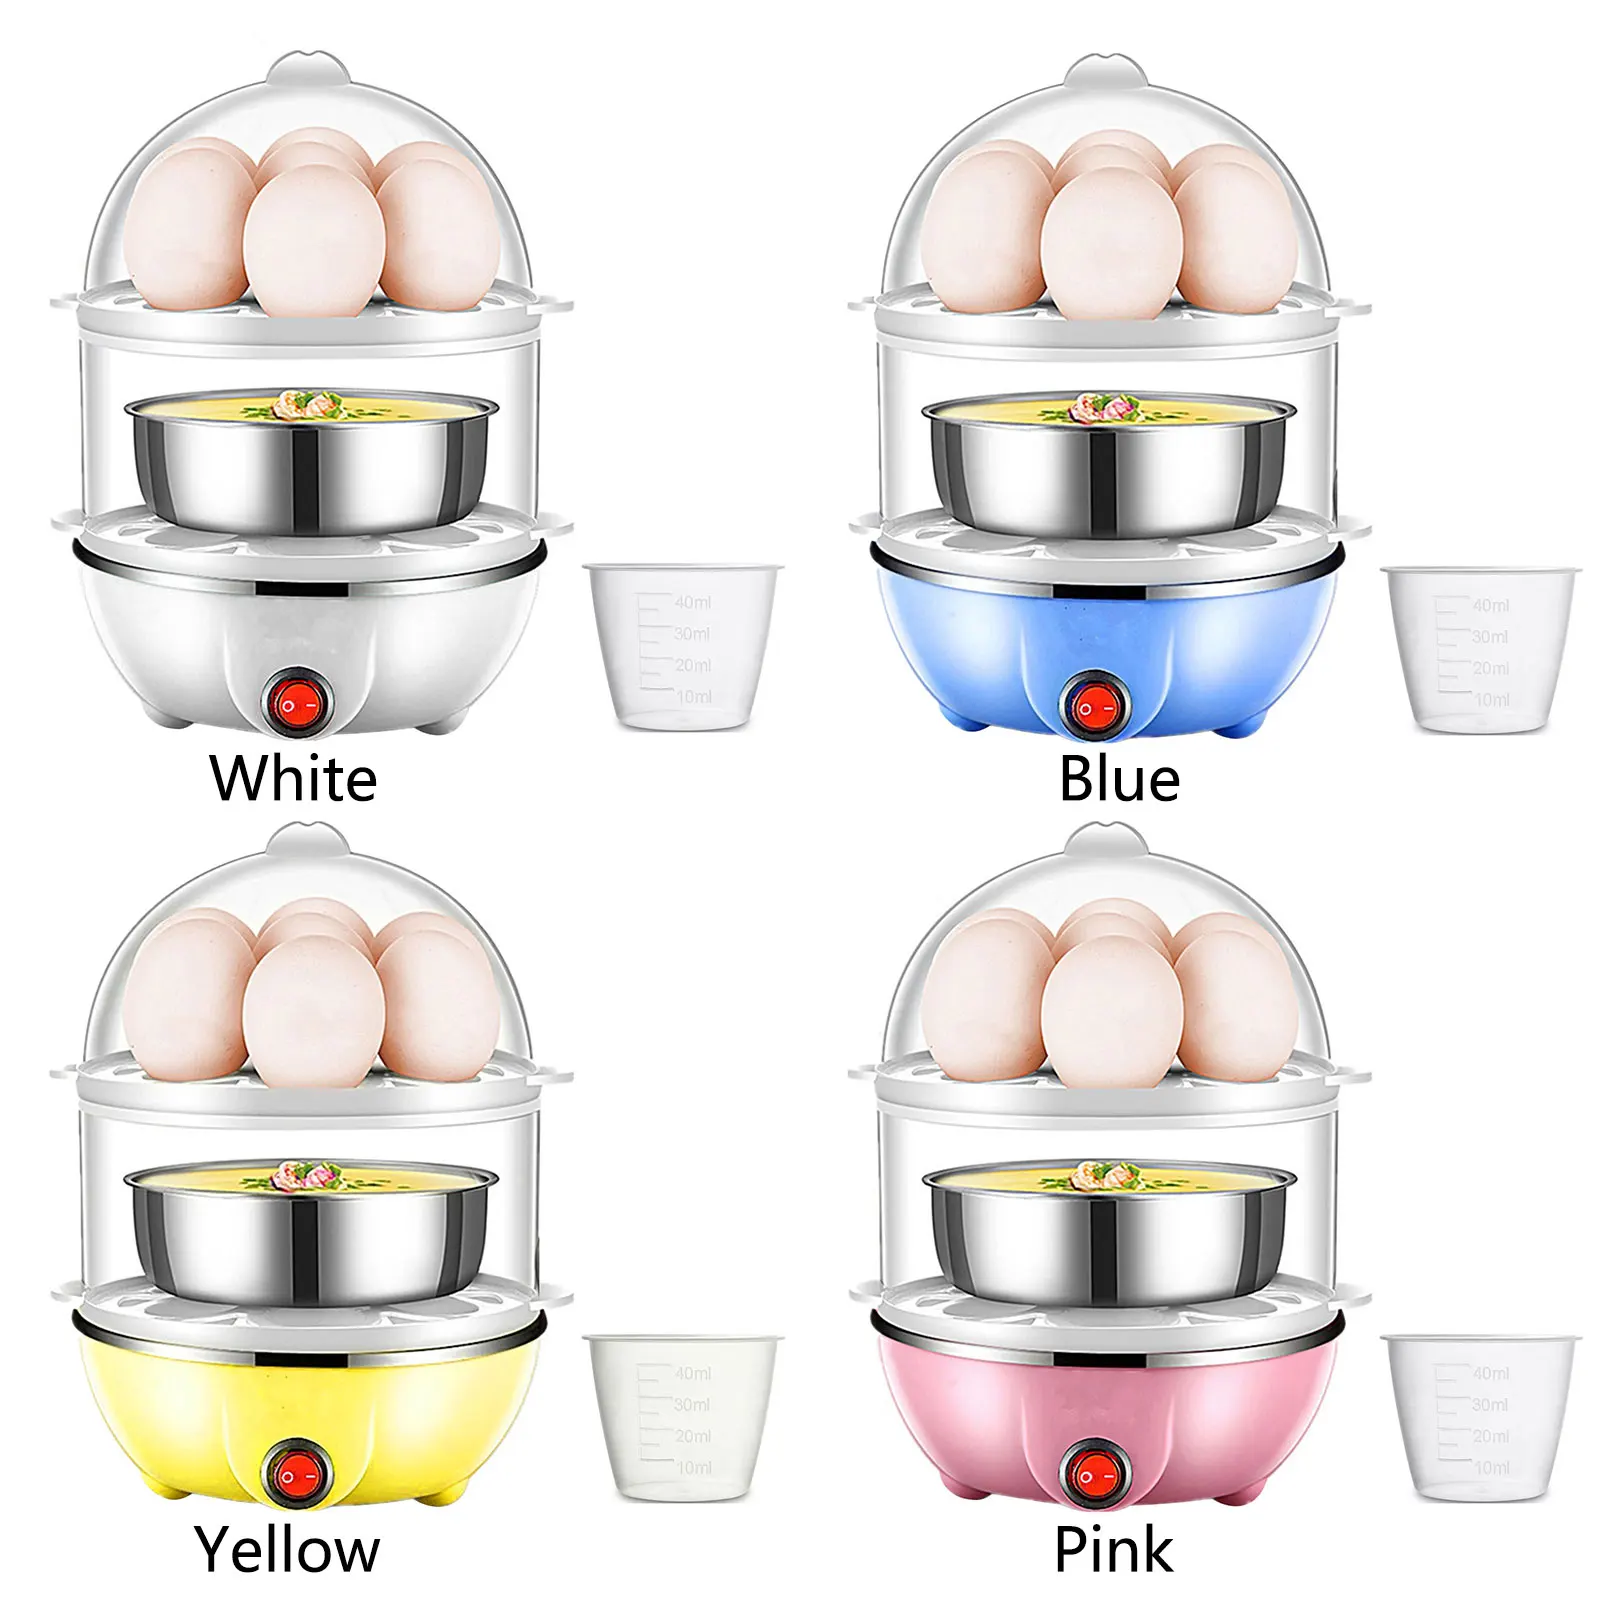 Мини-электрический бойлер для яиц с автоматическим отключением питания, 2-слойная пароварка для яичного крема с мерным стаканчиком, кухонные принадлежности для приготовления пищи, штепсельная вилка США